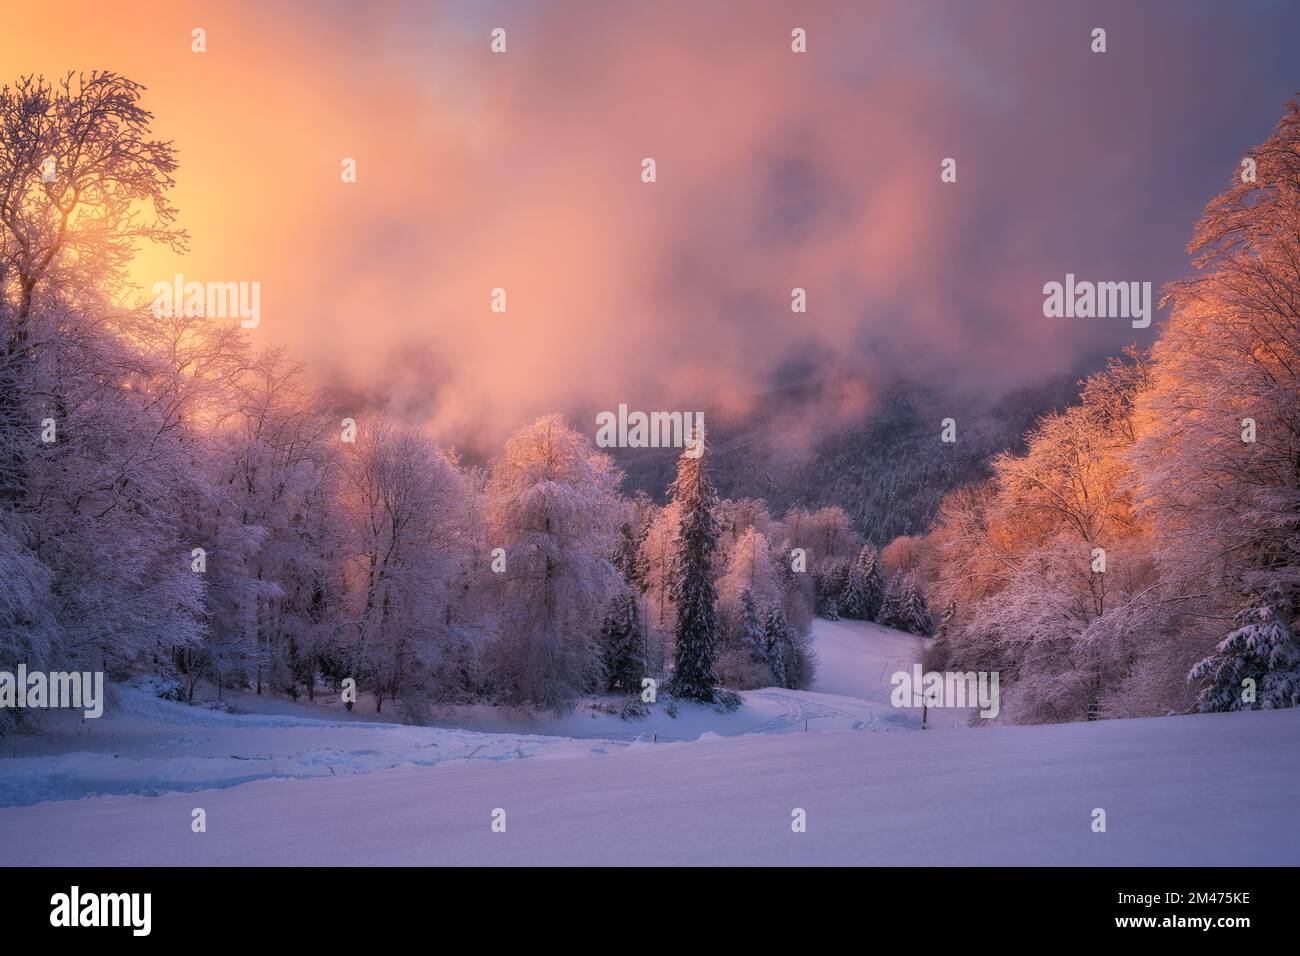 Forêt neigeuse dans les hiar et les nuages bas roses en hiver Banque D'Images